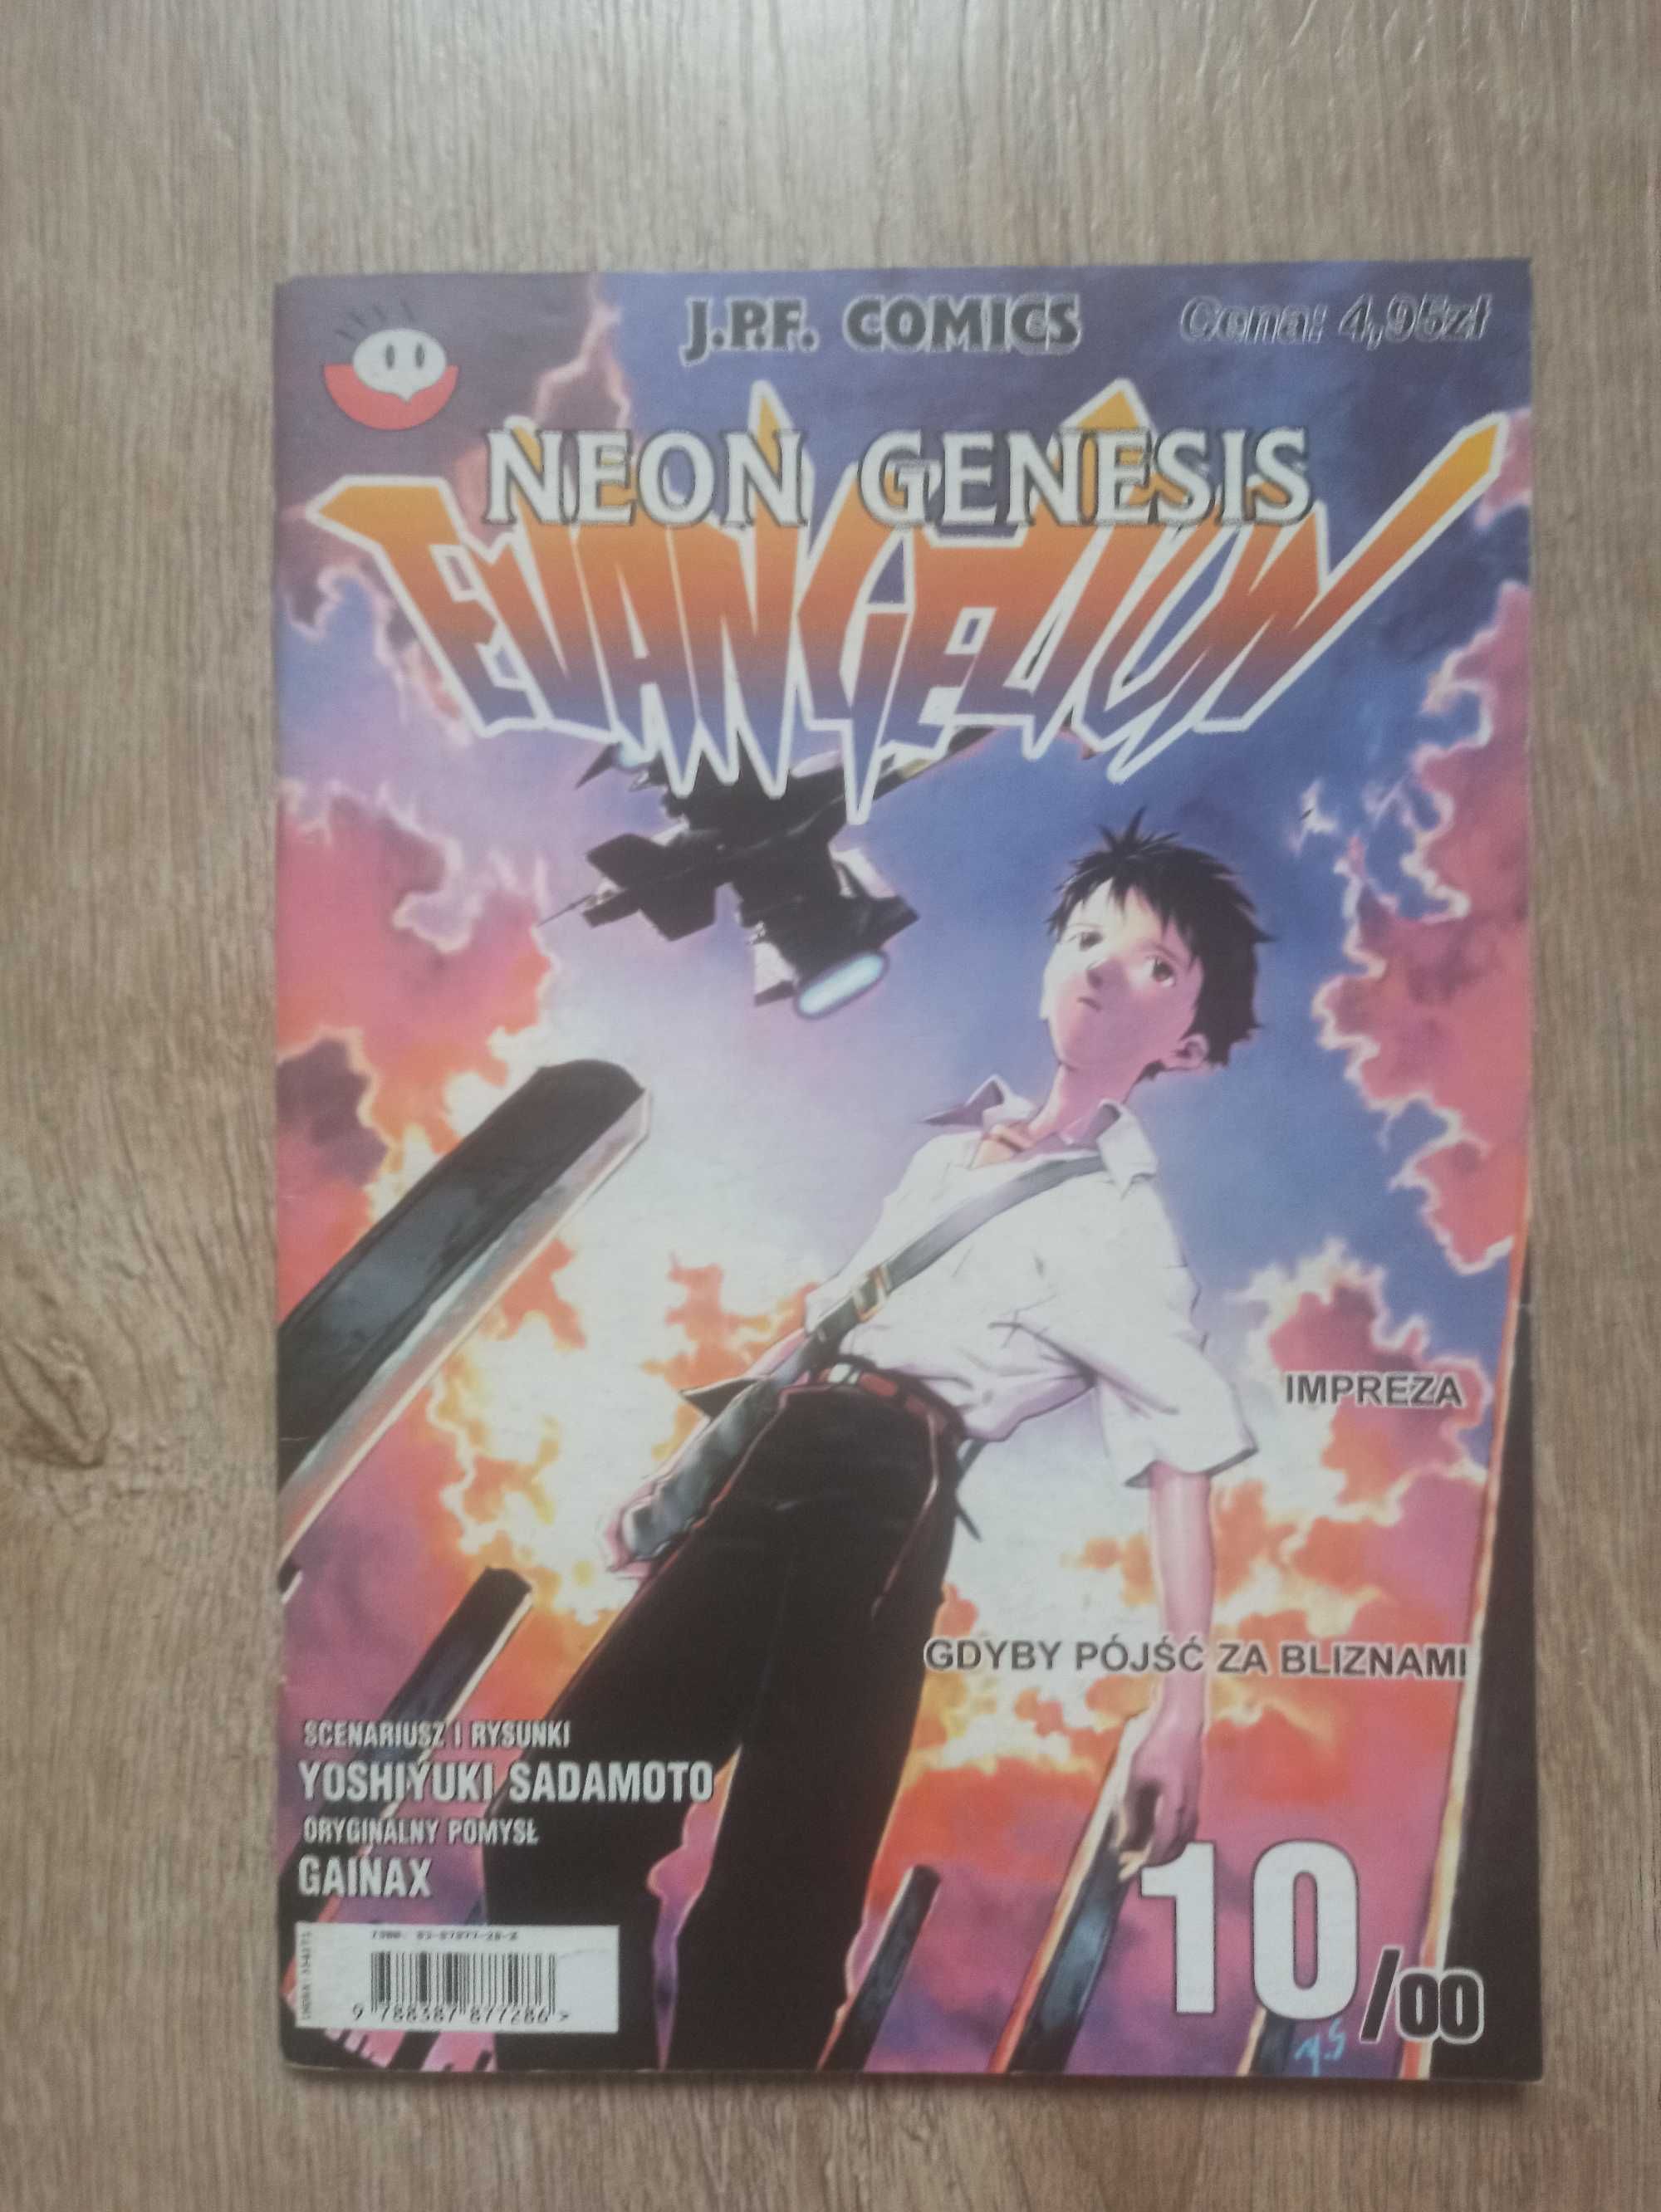 Yoshiyuki Sadamoto - Neon Genesis Evangelion 10/00